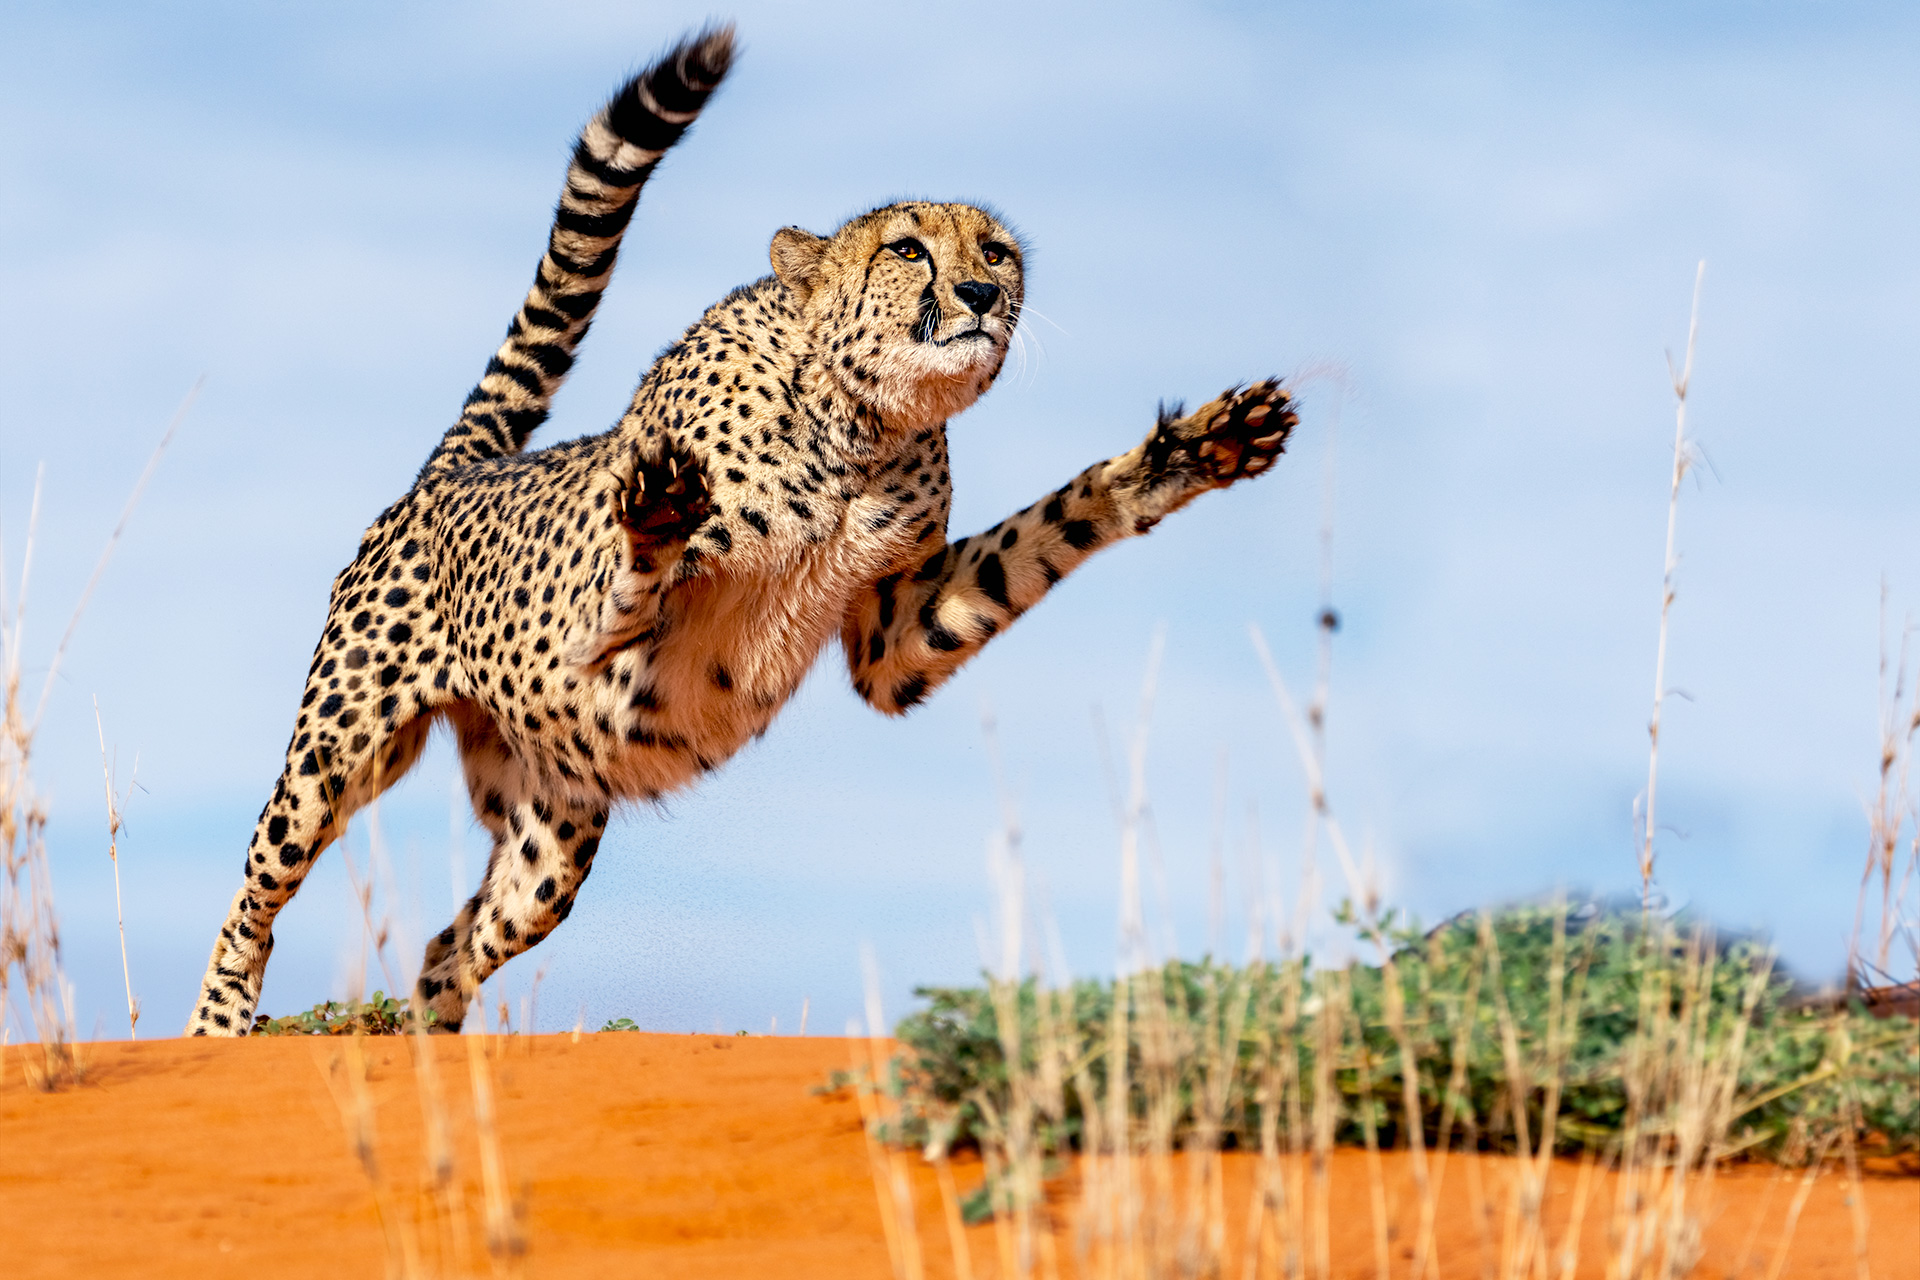 Ein Gepard springt in der Sandwüste der Kalahari. Fotografiert auf einer Fotoreise von Benny Rebel.